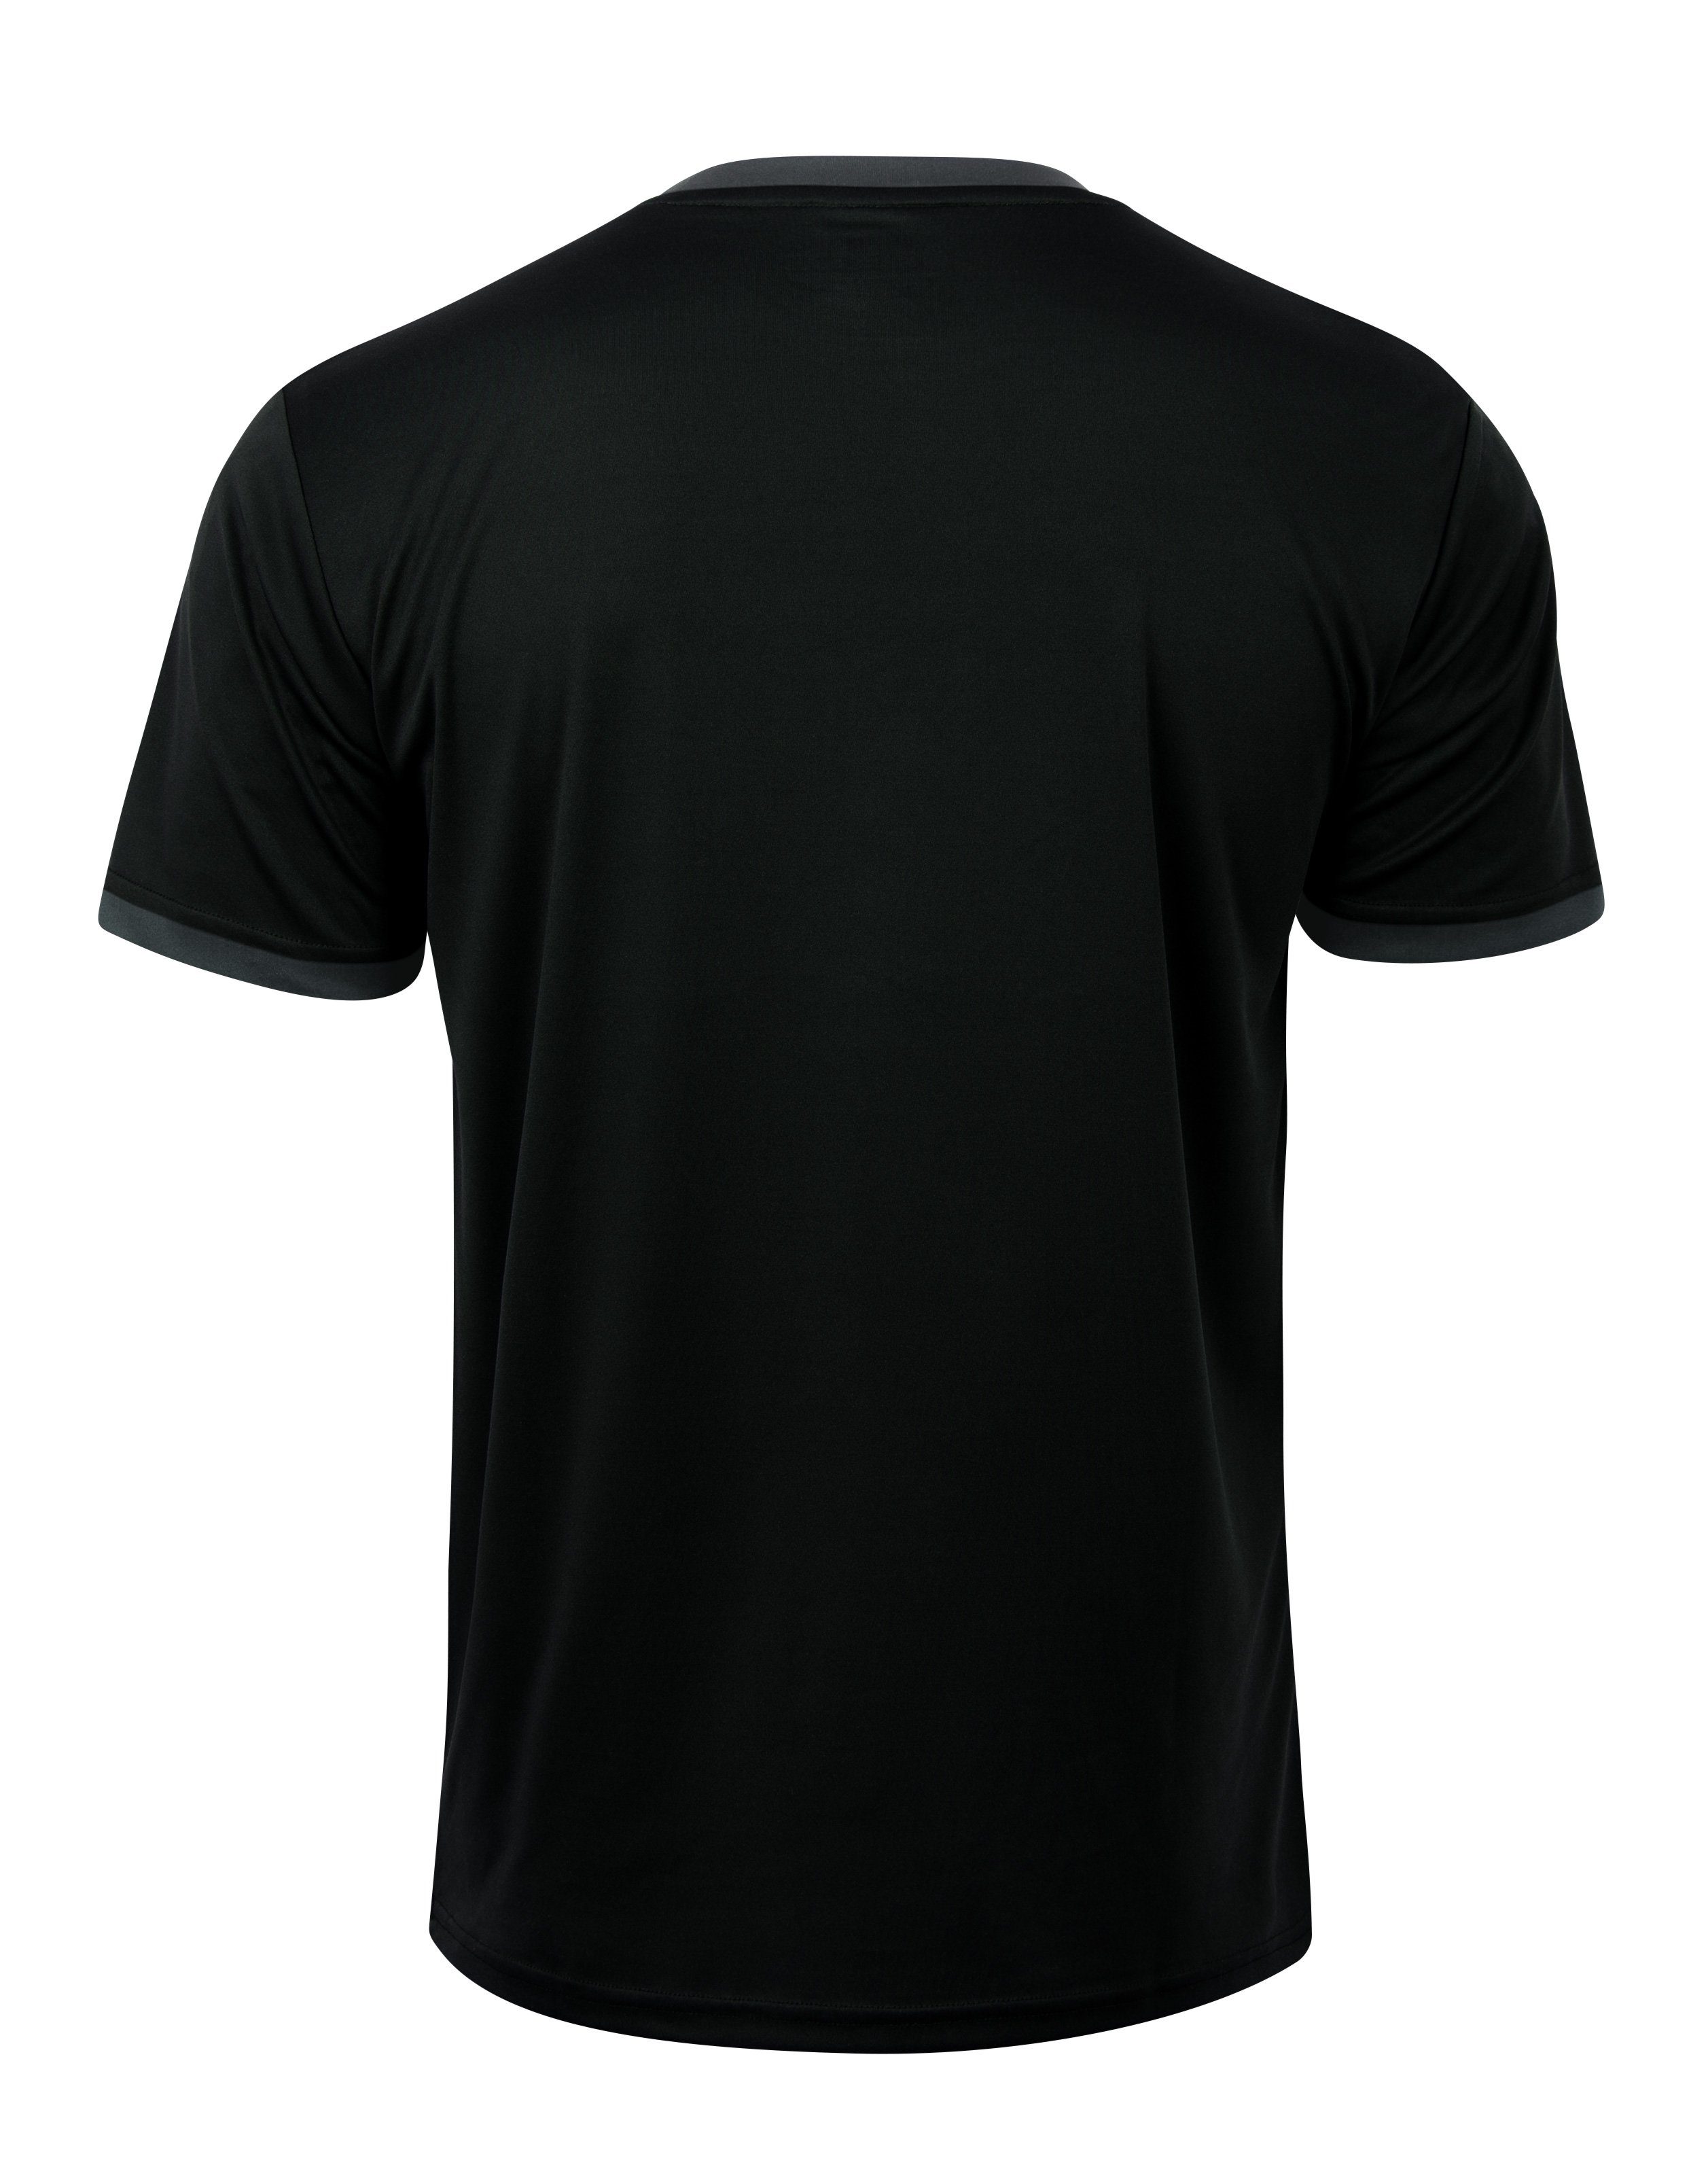 Stark Soul® T-Shirt Trainingsshirt Trikot Sport-Shirt, Kurzarm "Stained"- T-Shirt, Schwarz Herren